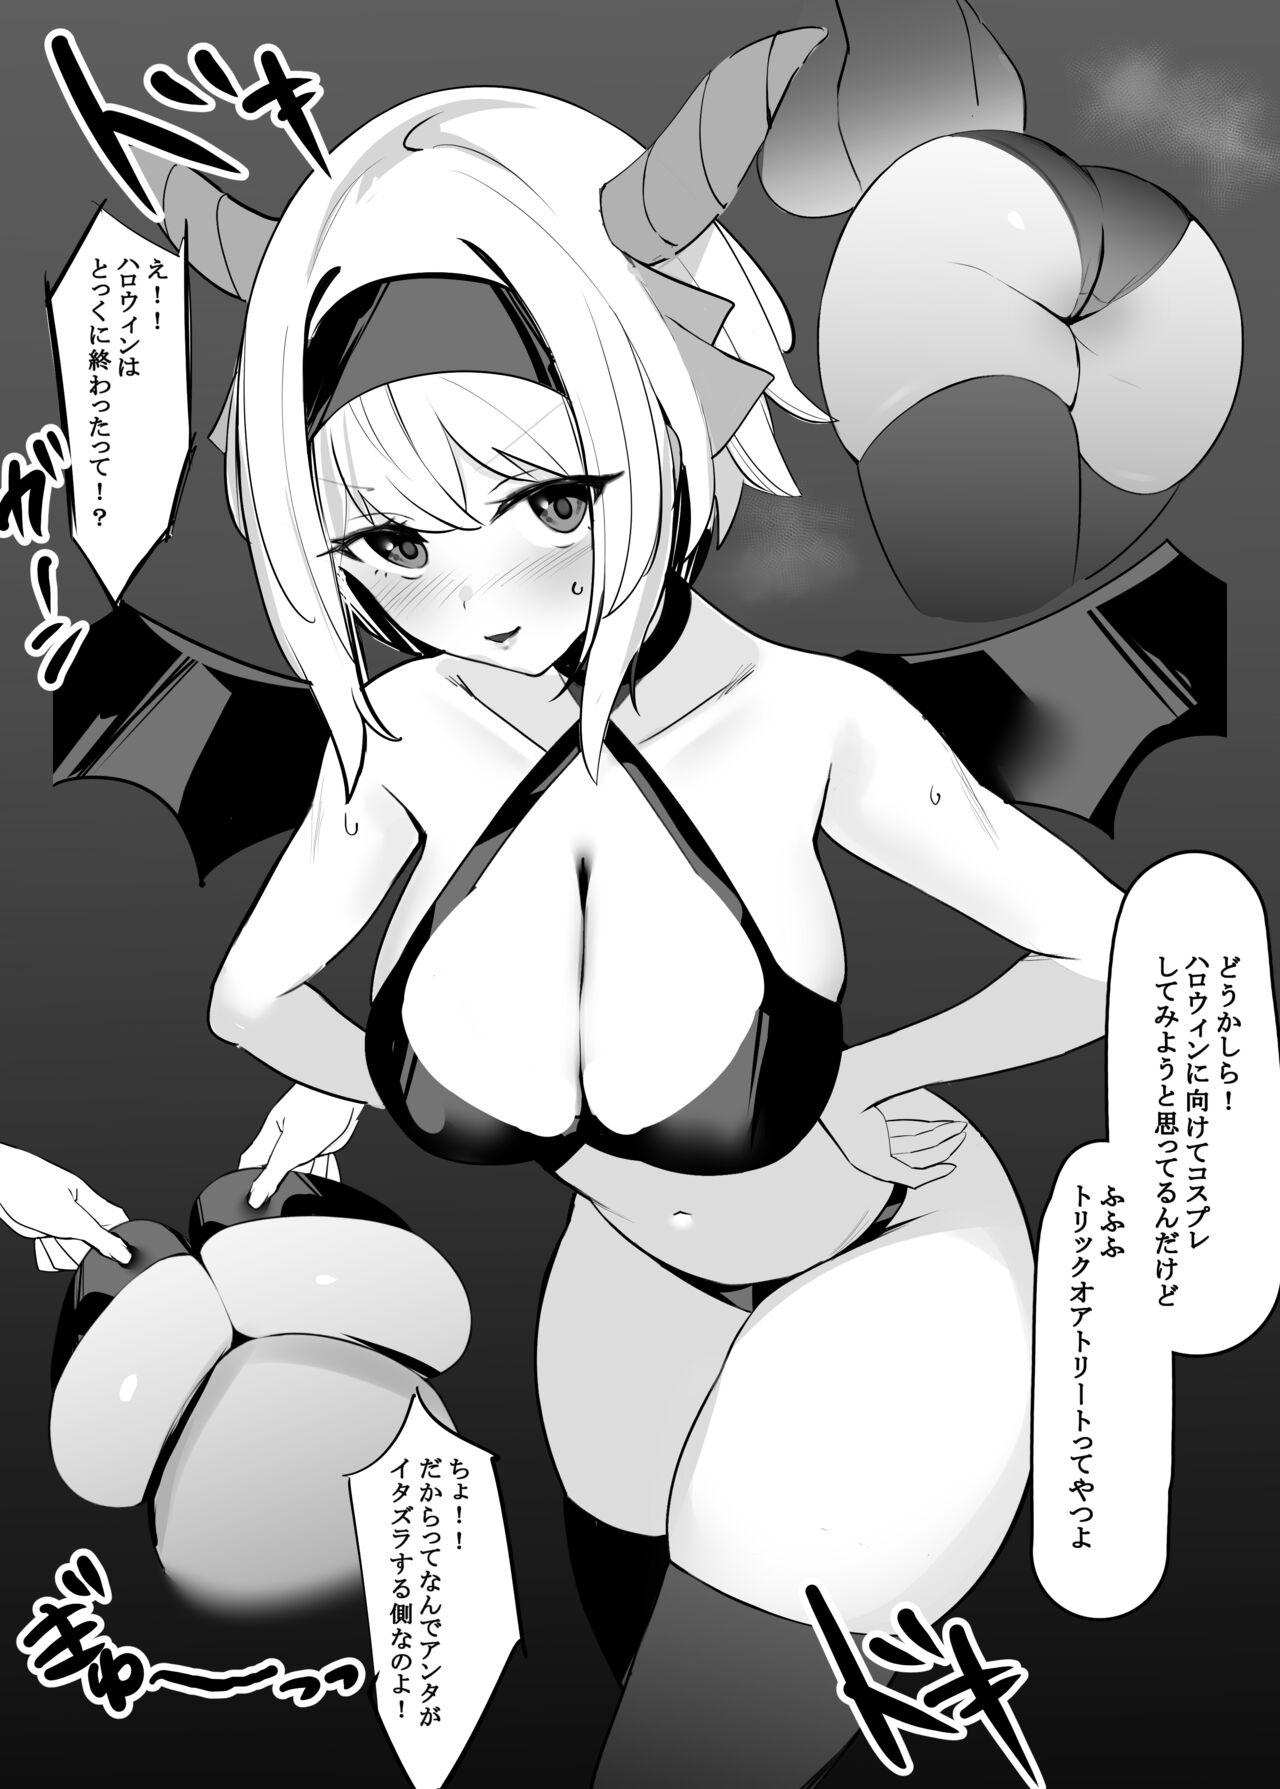 Tittyfuck Uchi no Ko Manga - Original Teenxxx - Picture 1